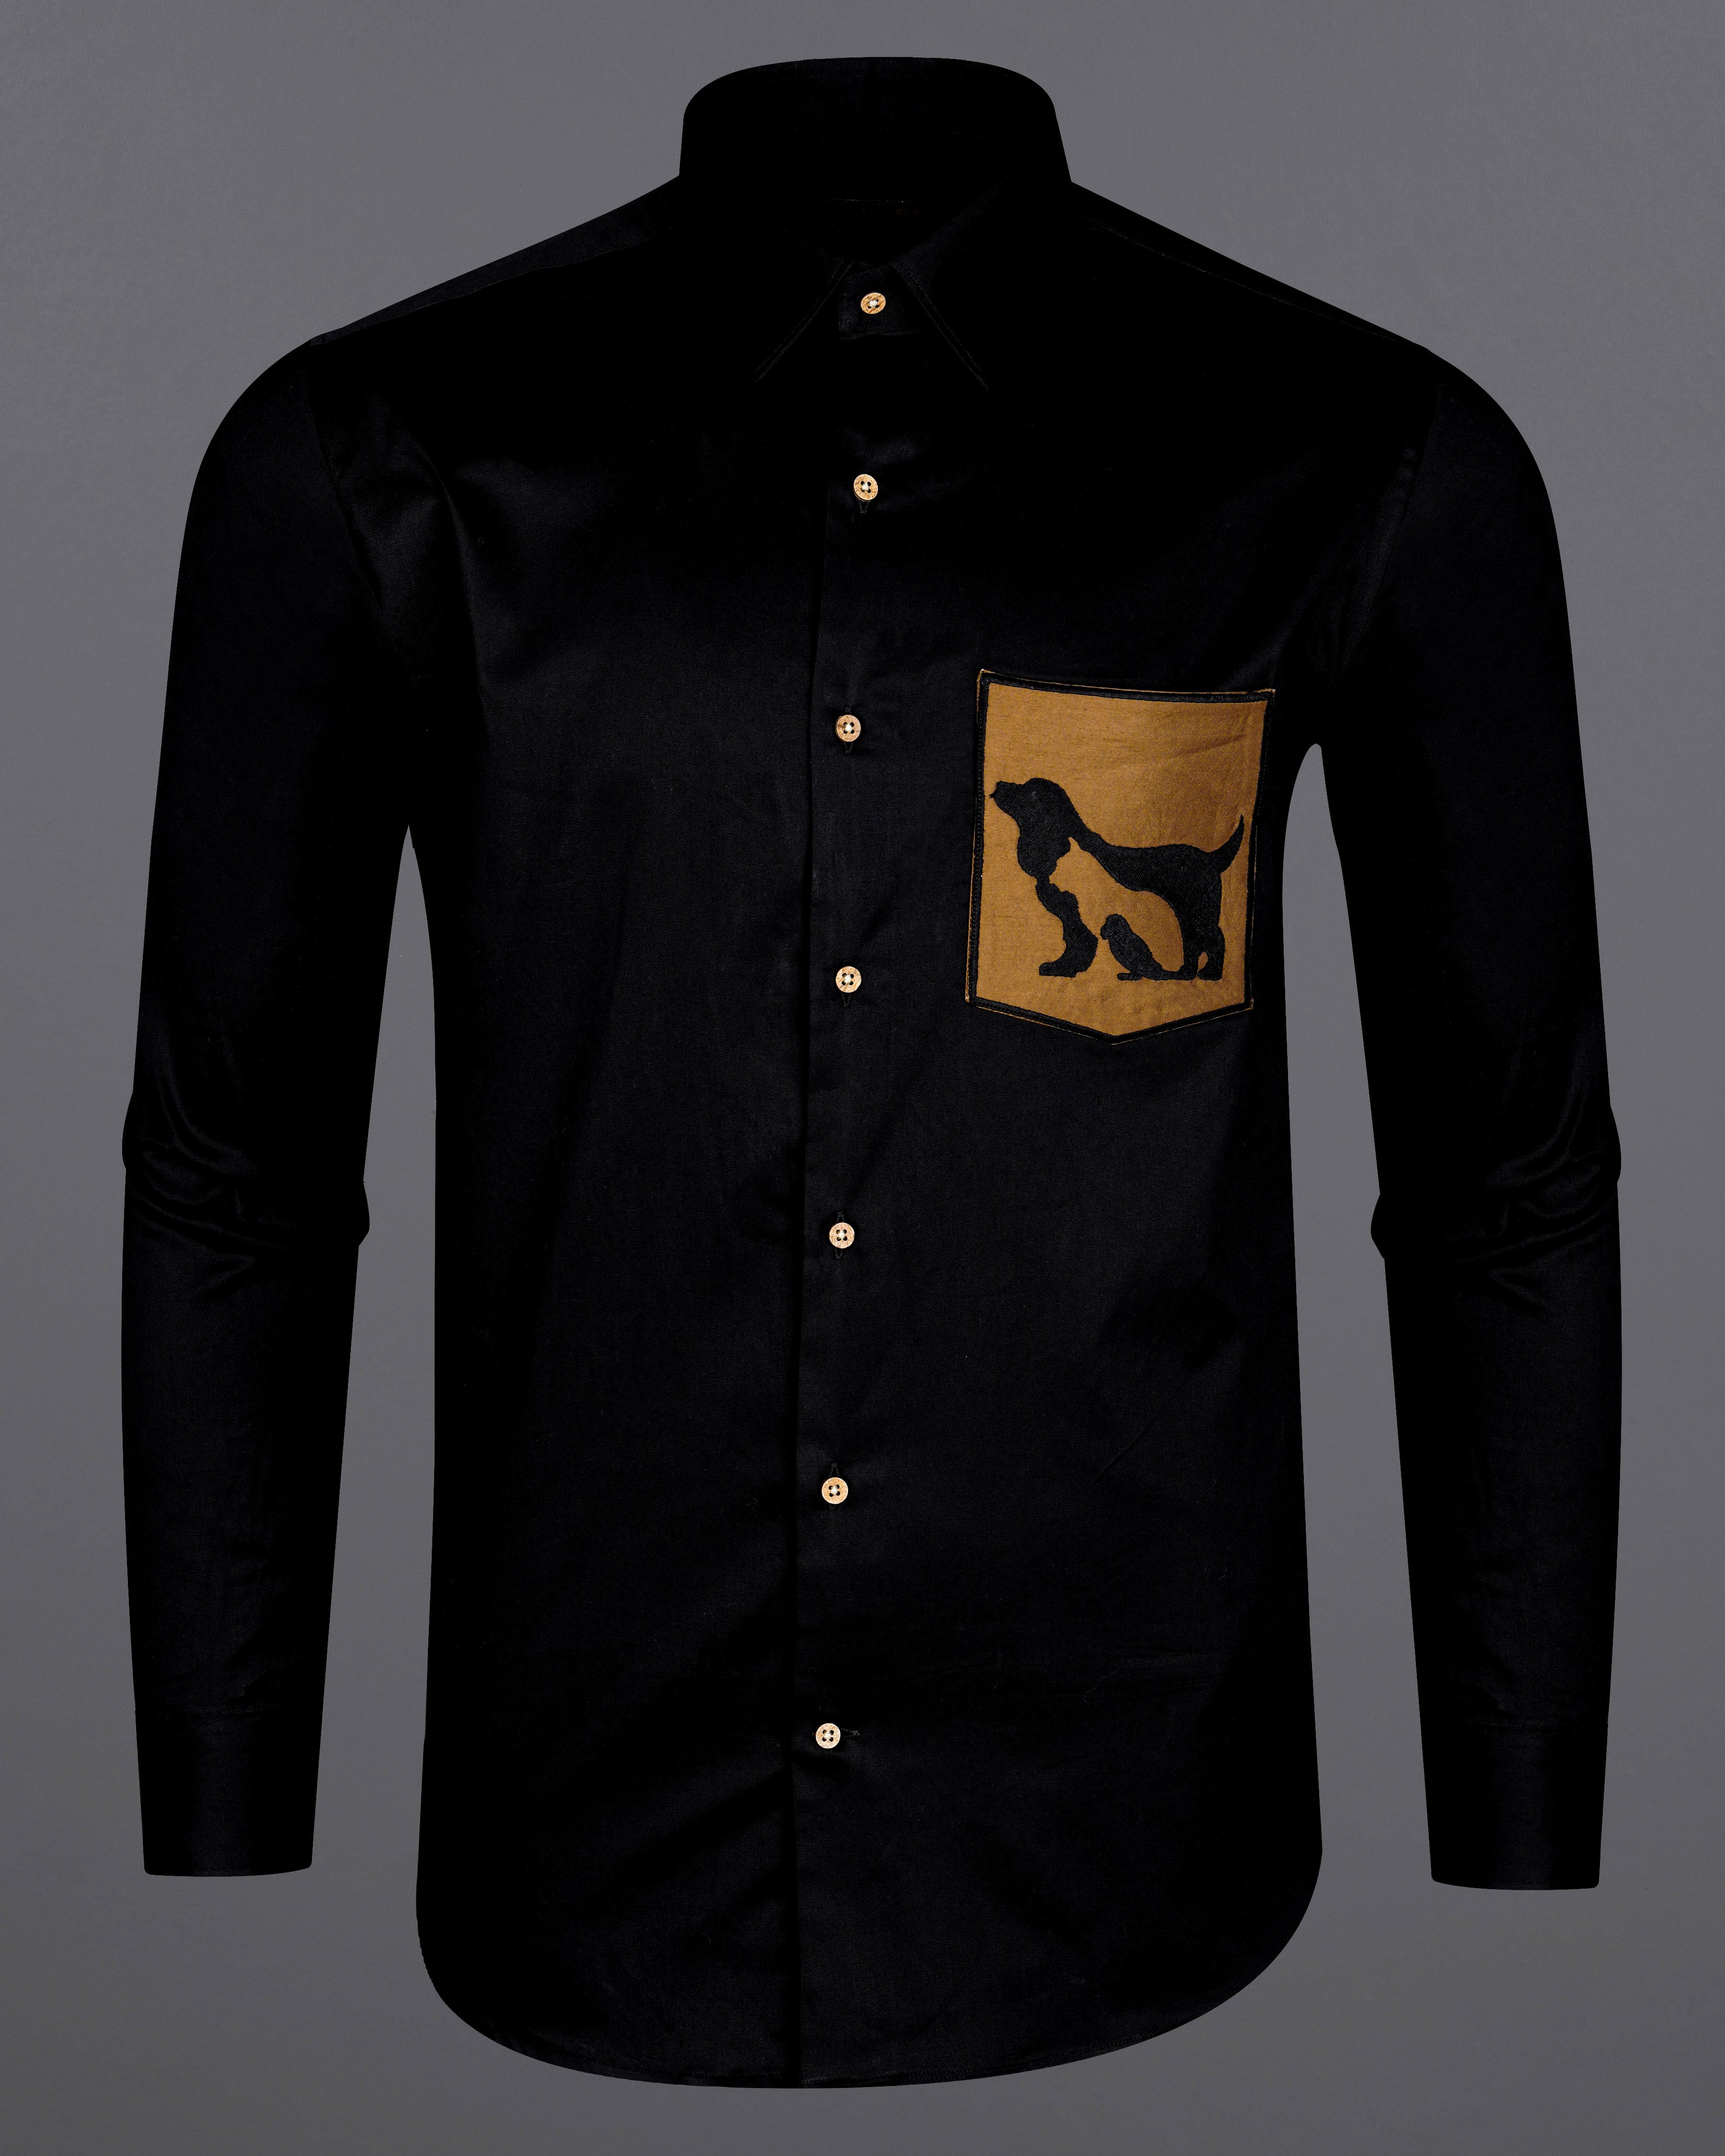 Jade Black with Mckenzi Brown Patch Pocket Illusion Dog Embroidered  Super Soft Premium Cotton Shirt 8436-E003-38, 8436-E003-H-38, 8436-E003-39, 8436-E003-H-39, 8436-E003-40, 8436-E003-H-40, 8436-E003-42, 8436-E003-H-42, 8436-E003-44, 8436-E003-H-44, 8436-E003-46, 8436-E003-H-46, 8436-E003-48, 8436-E003-H-48, 8436-E003-50, 8436-E003-H-50, 8436-E003-52, 8436-E003-H-52